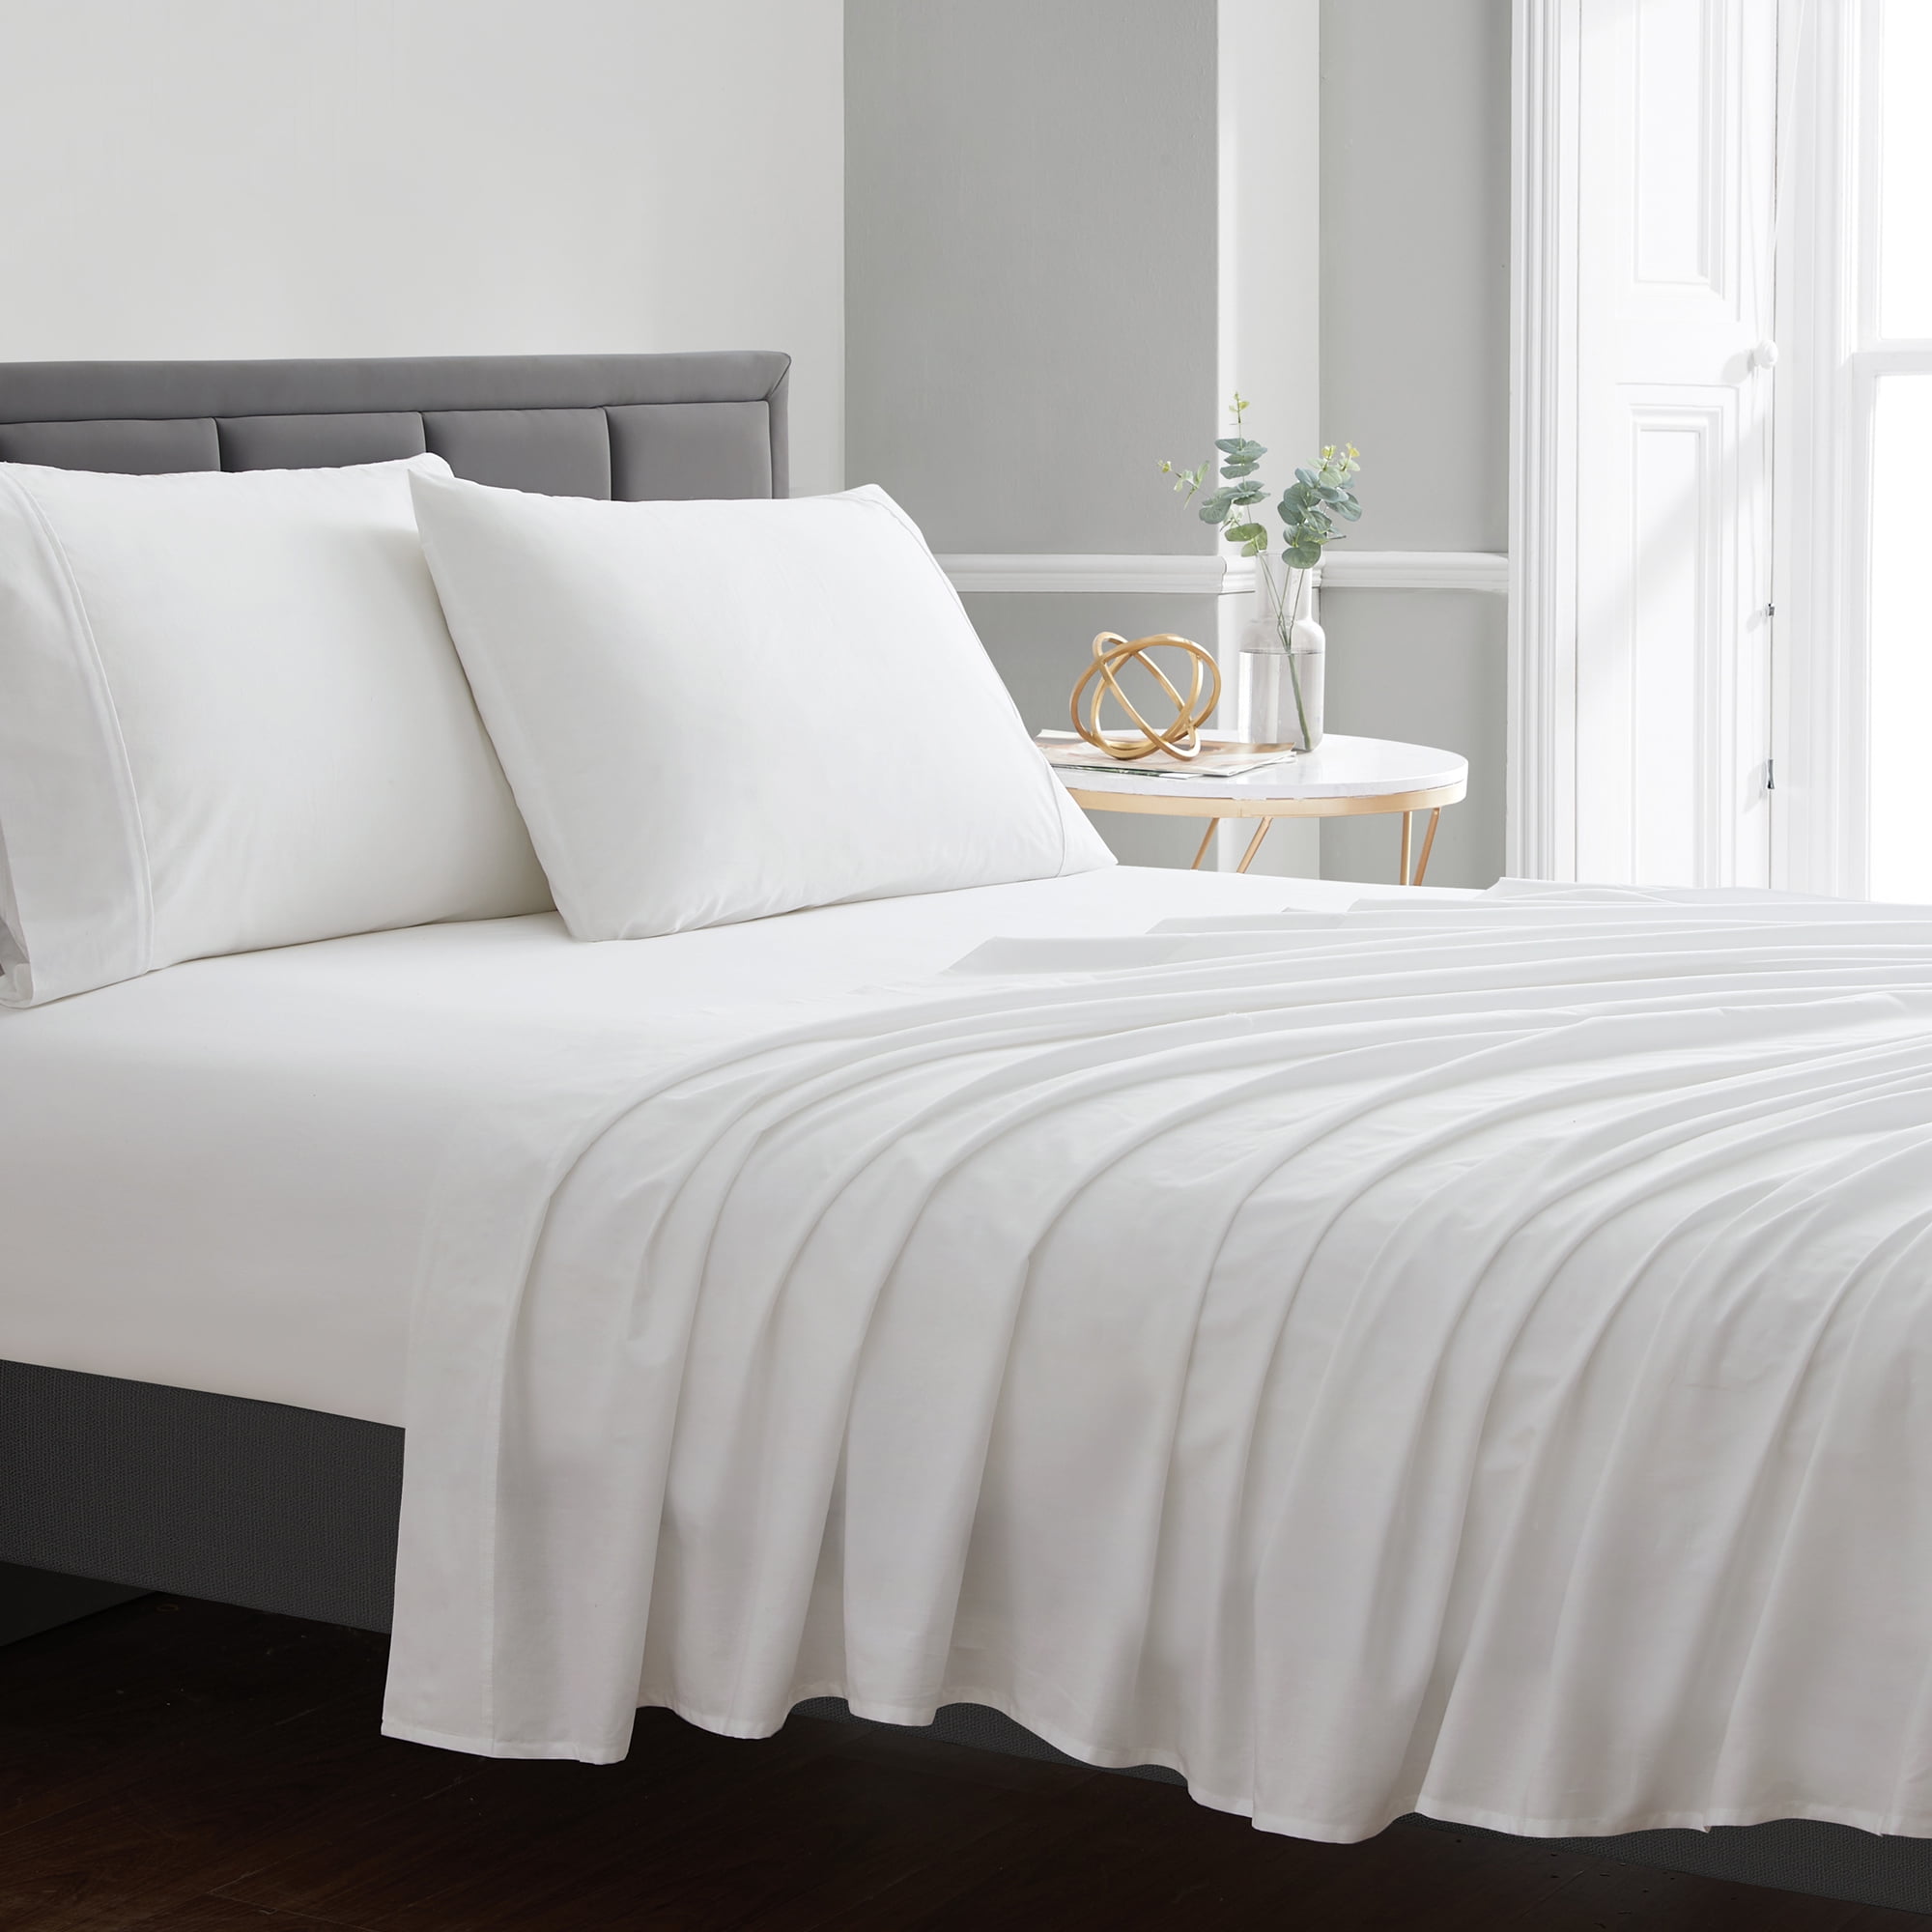 1 new white king size hotel flat sheet 108x110 200 threadcount 100% cotton 